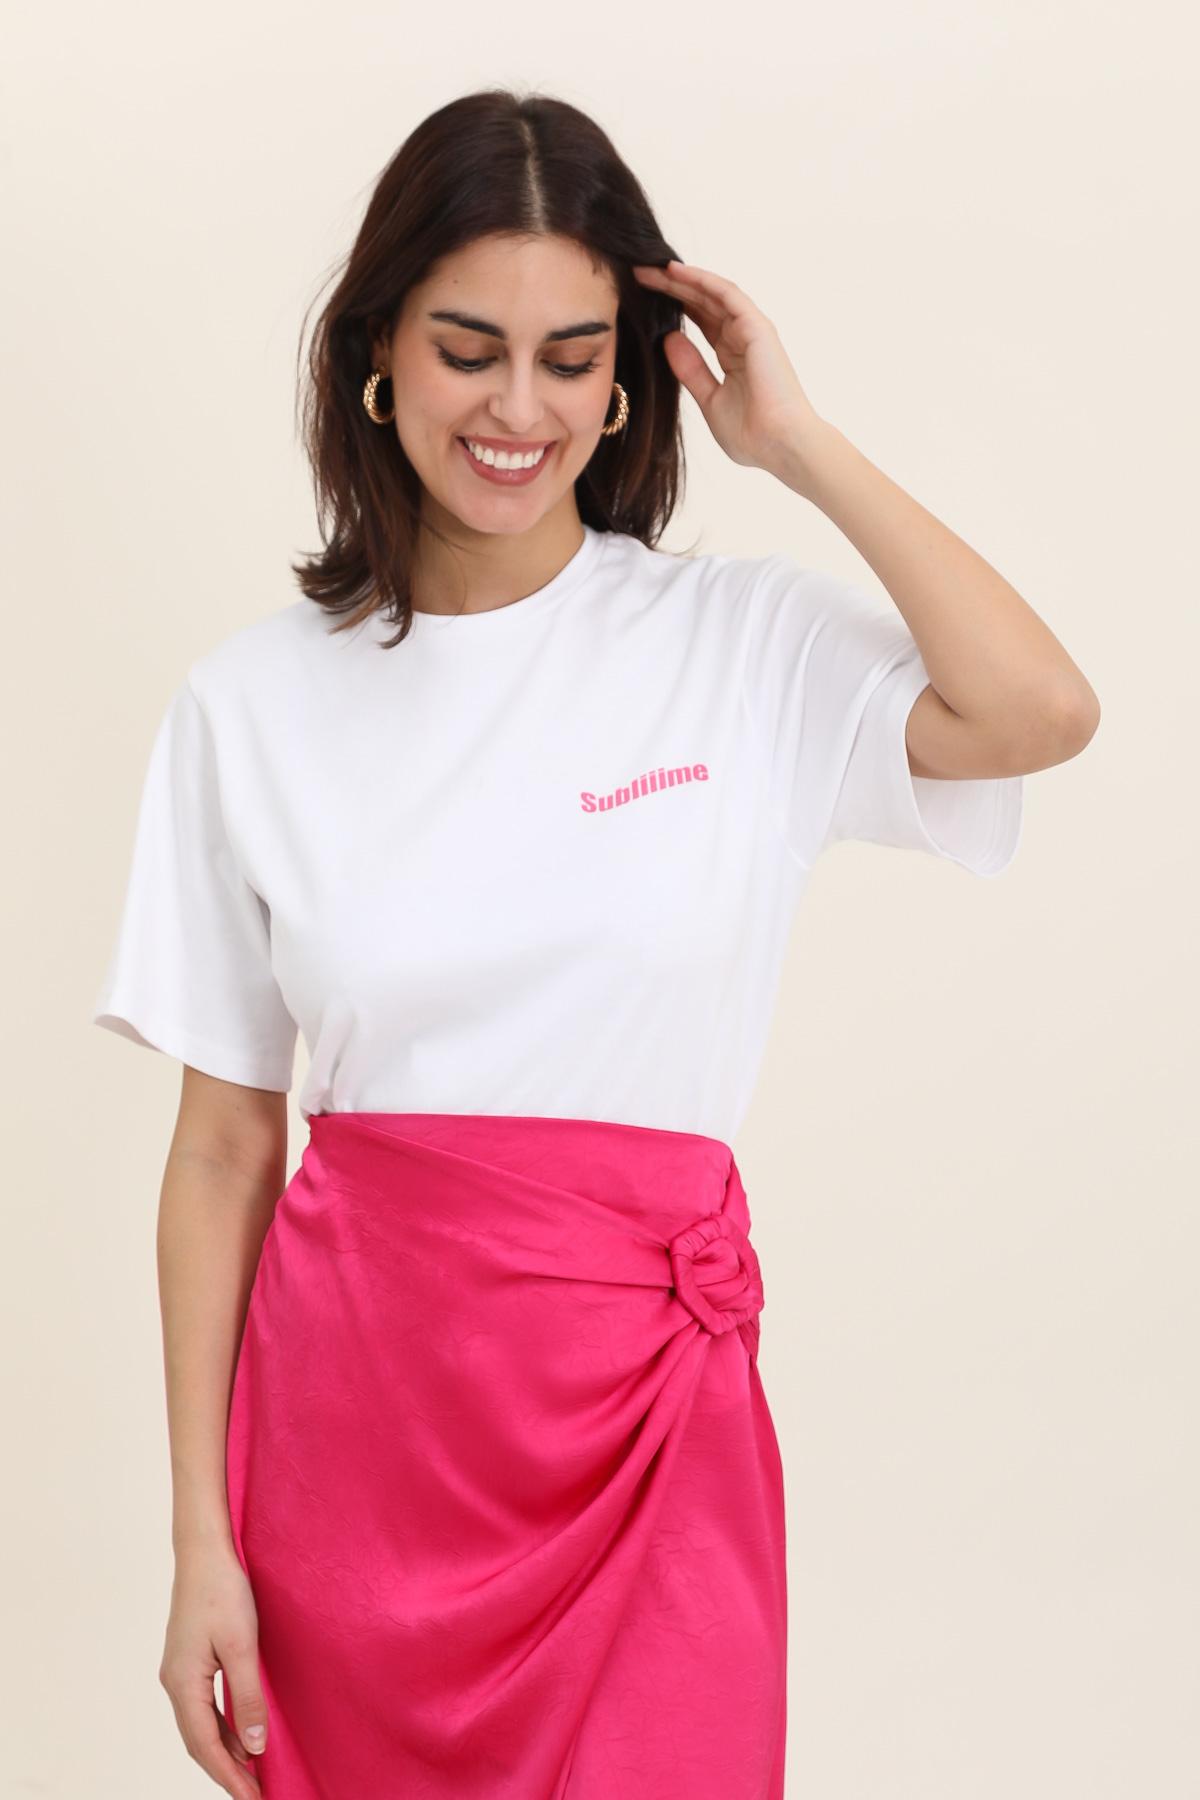 Camisetas Mujer Pink Daphnea 31710 #c Efashion Paris